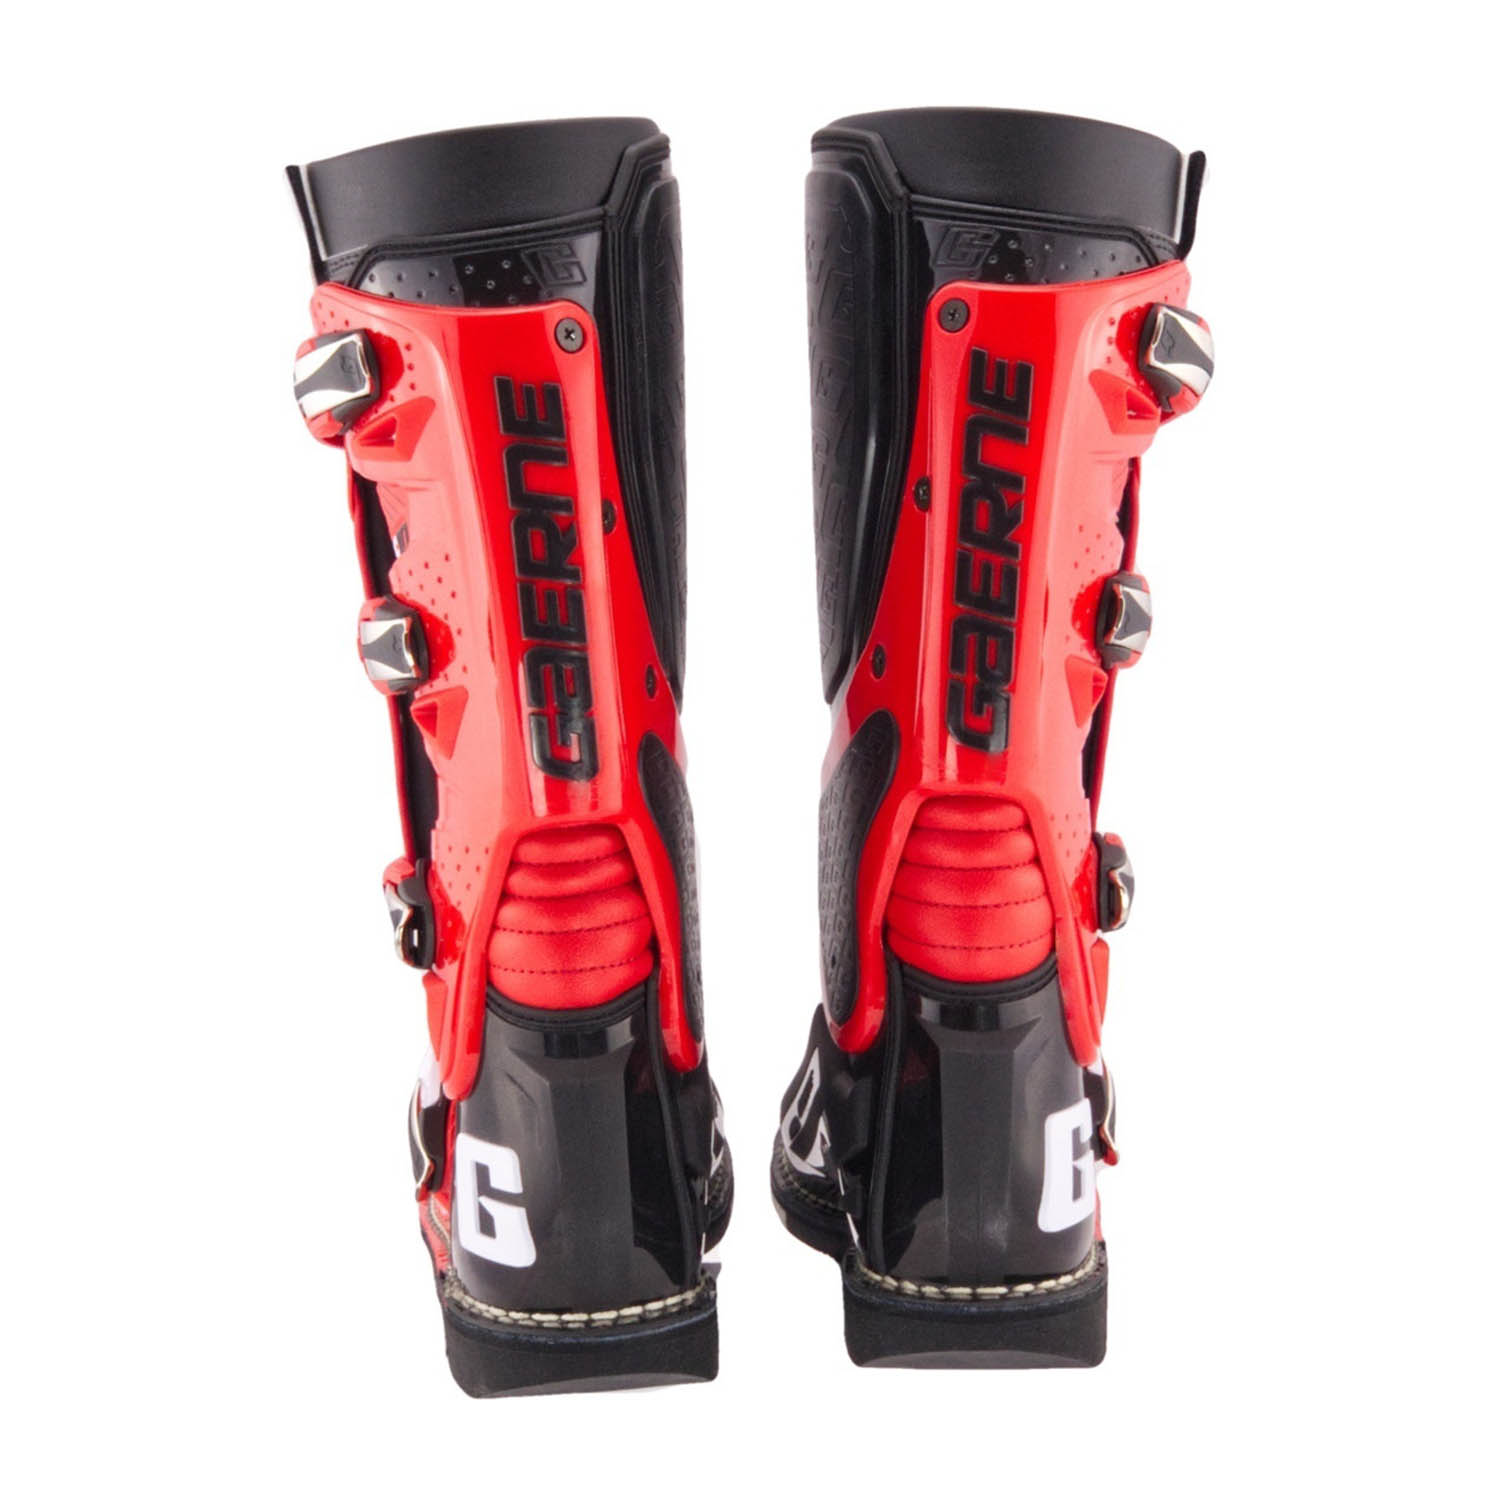 GAERNE SG-10 черно-красного цвета спортивные сапоги для мотокросса, вид сзади купить по низкой цене